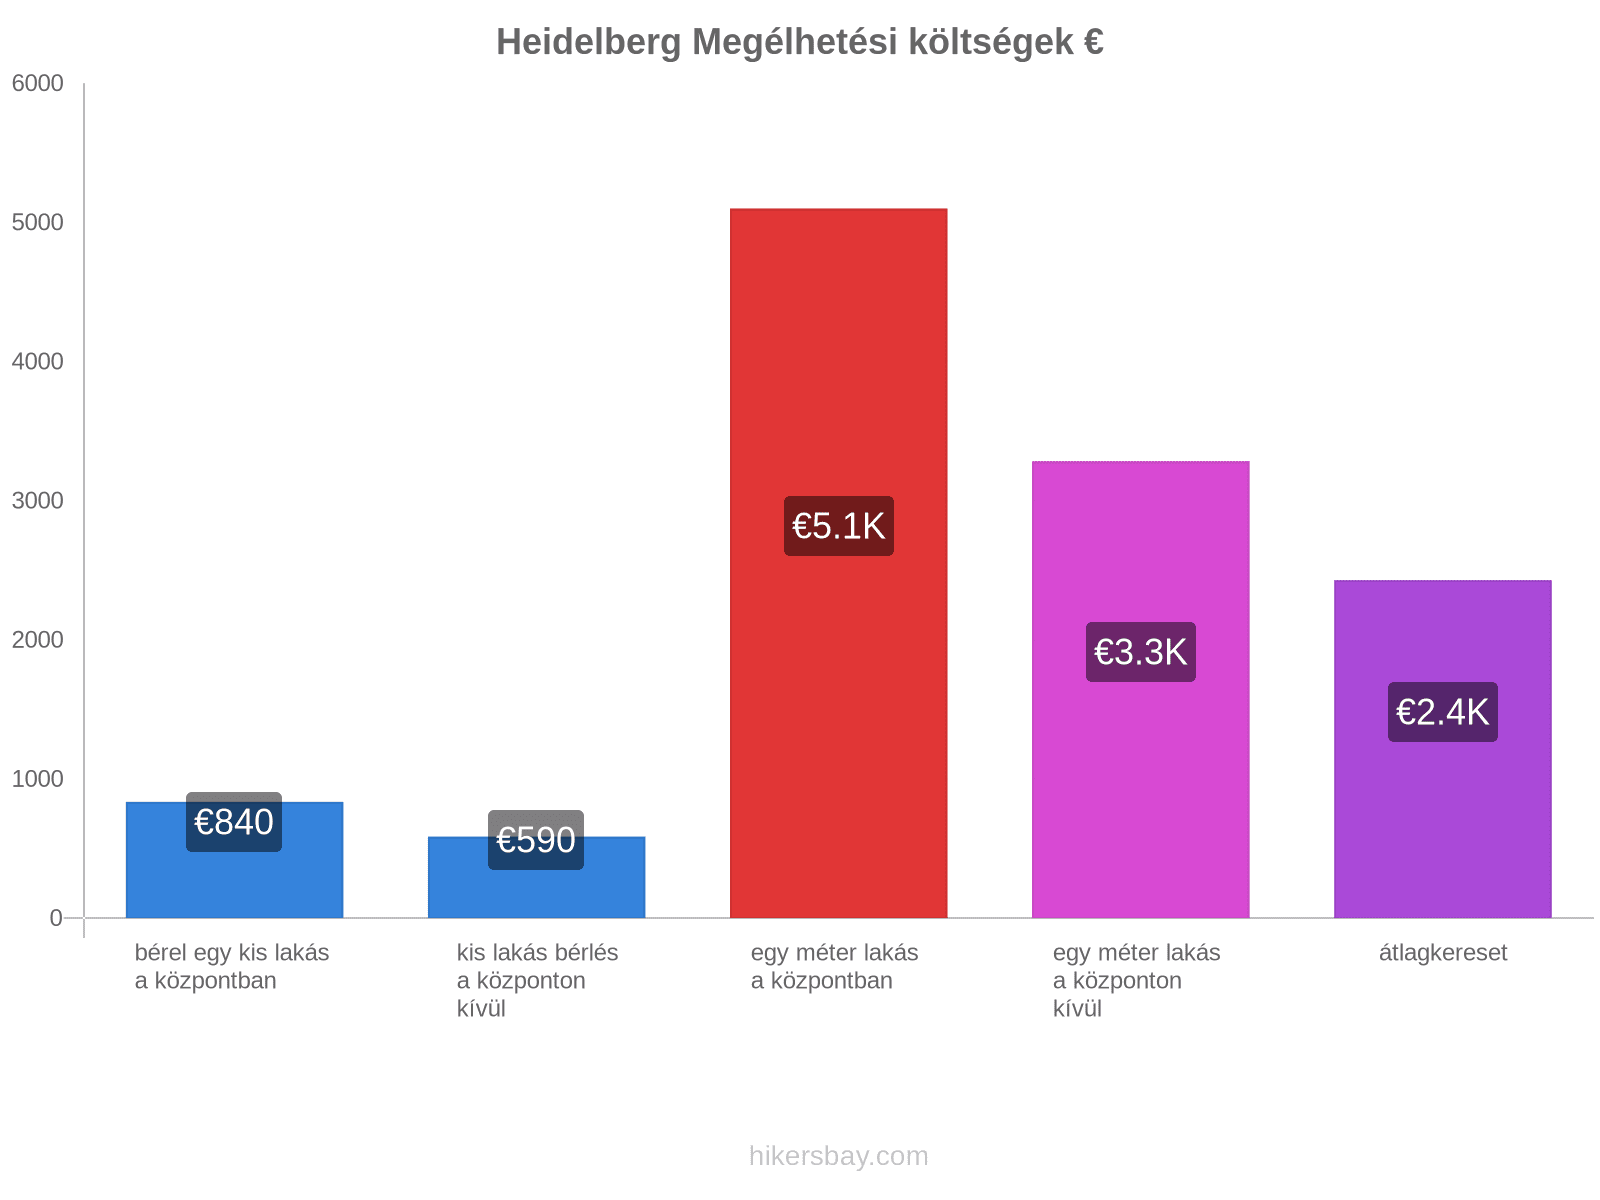 Heidelberg megélhetési költségek hikersbay.com